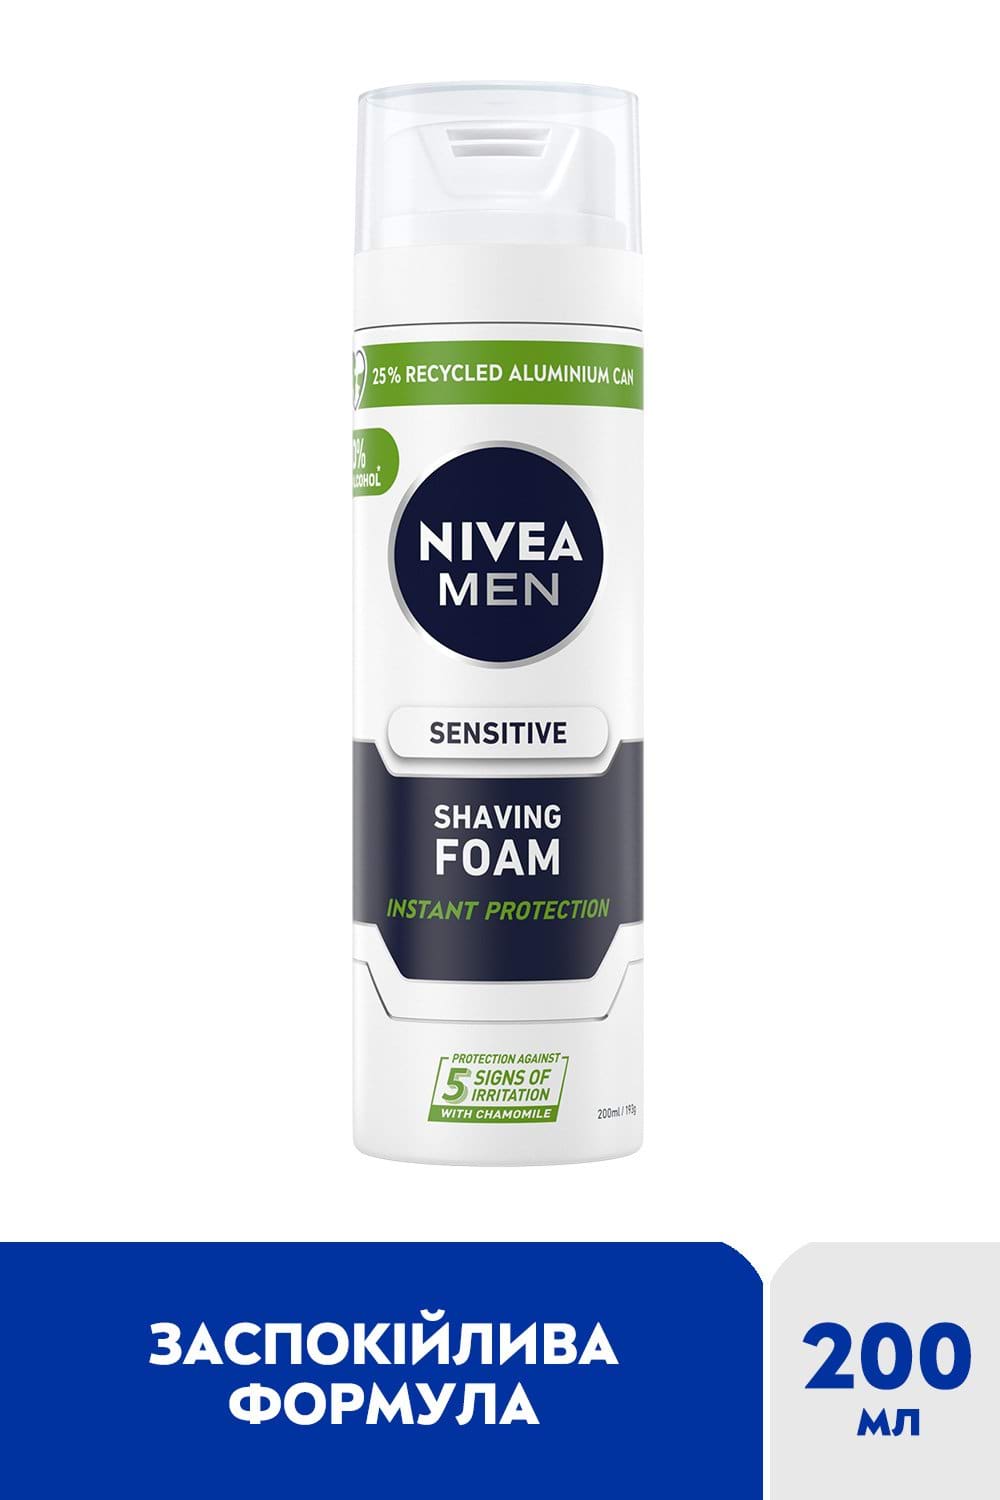 Пена для бритья NIVEA MEN для чувствительной кожи 200 мл.